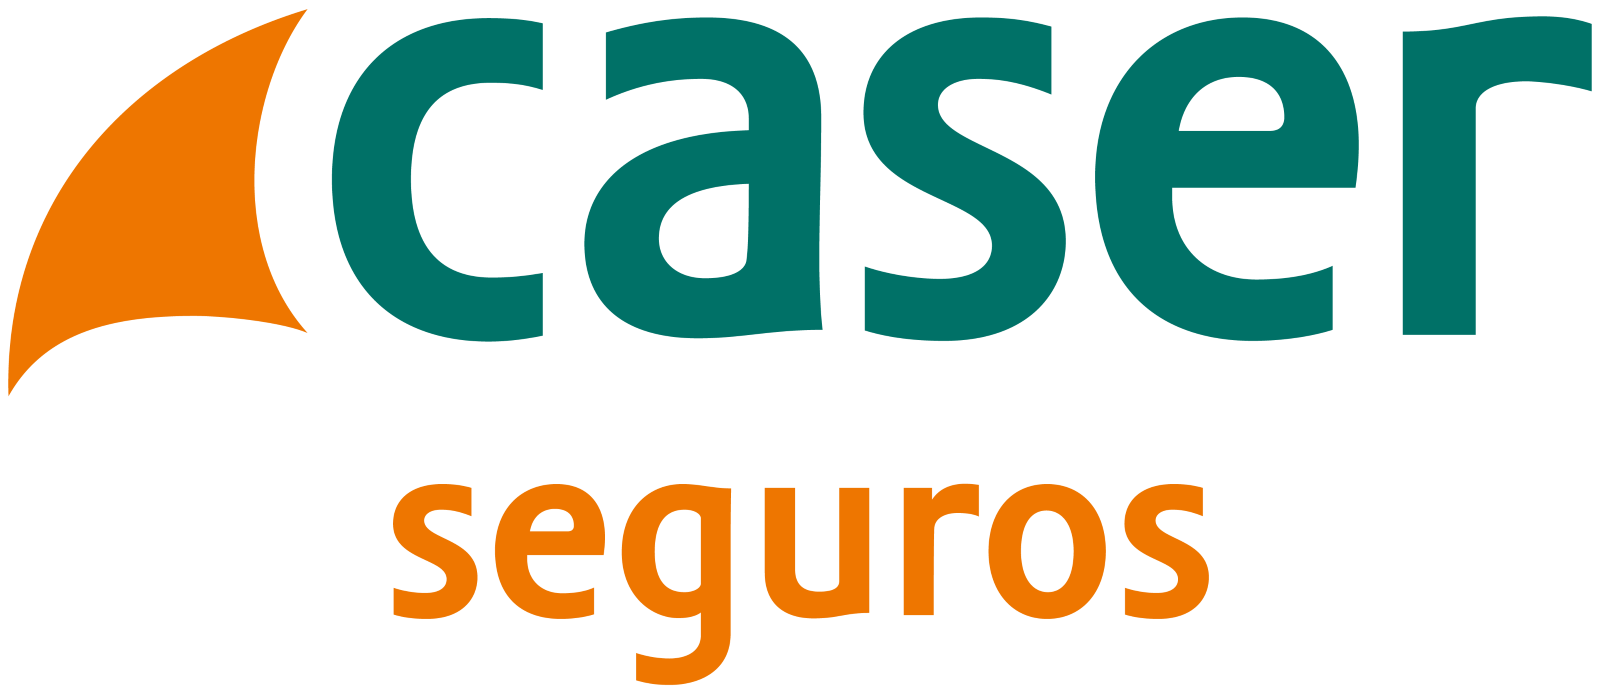 Logotipo Caser Seguros